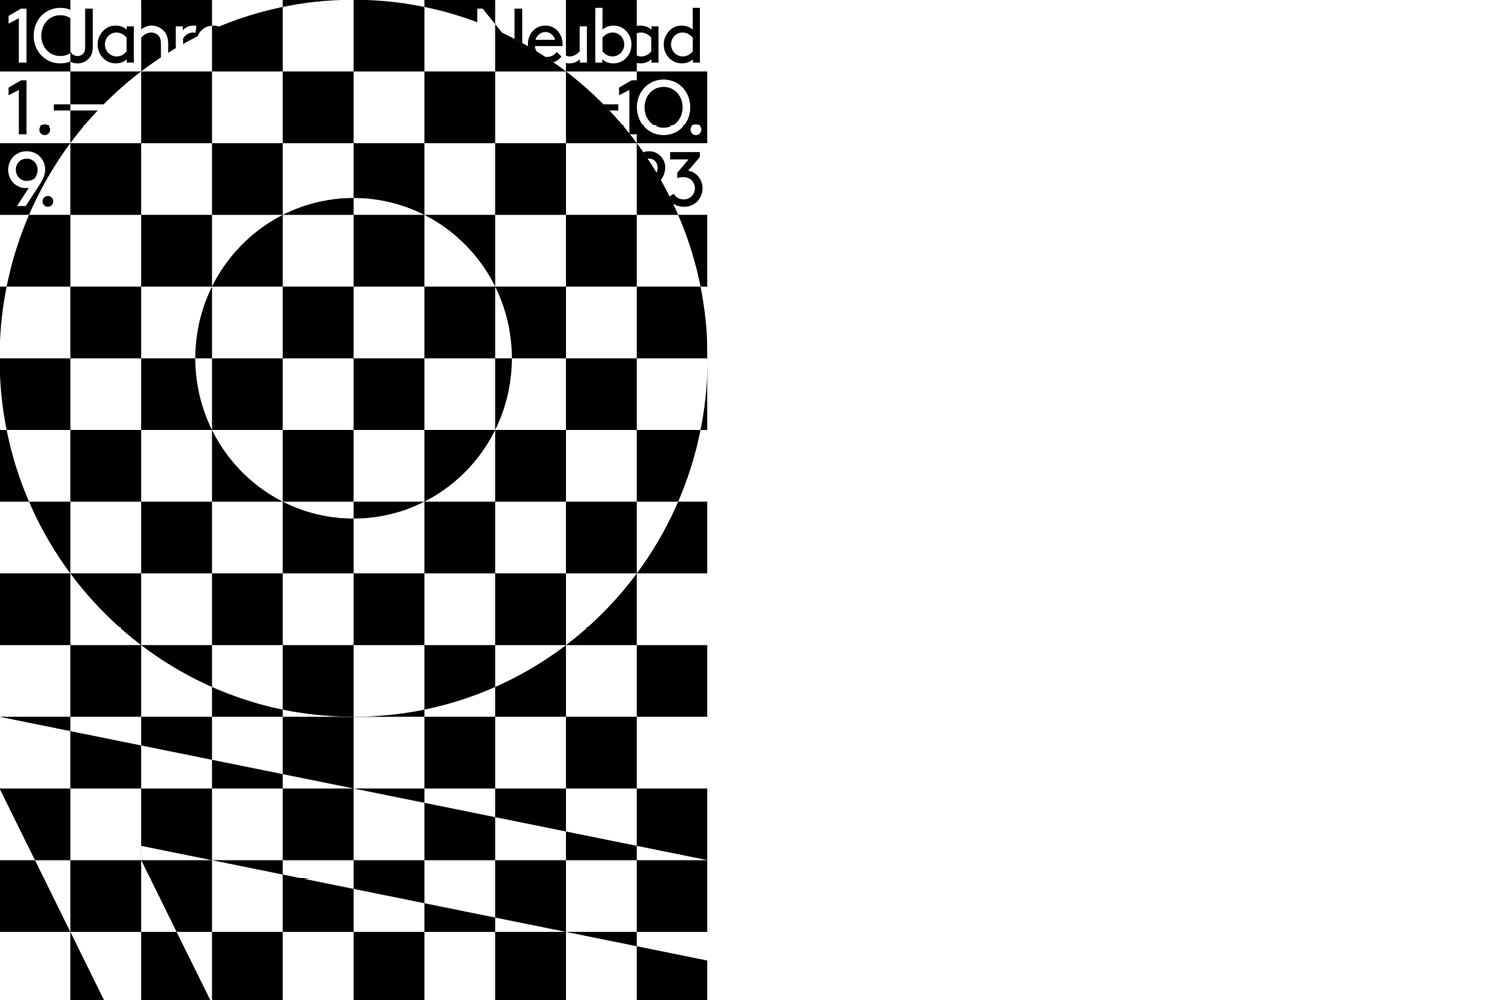 Ein Plakat mit einem schwarz-weissen Schachbrettmuster als Hintergrund. Darauf ist die Zahl 10 zu sehen, die im 90 Grad gedreht ist, also auf dem Kopf steht. Am oberen Rand des Plakats steht "10 Jahre Neuabd" und "1.-9.10.23"